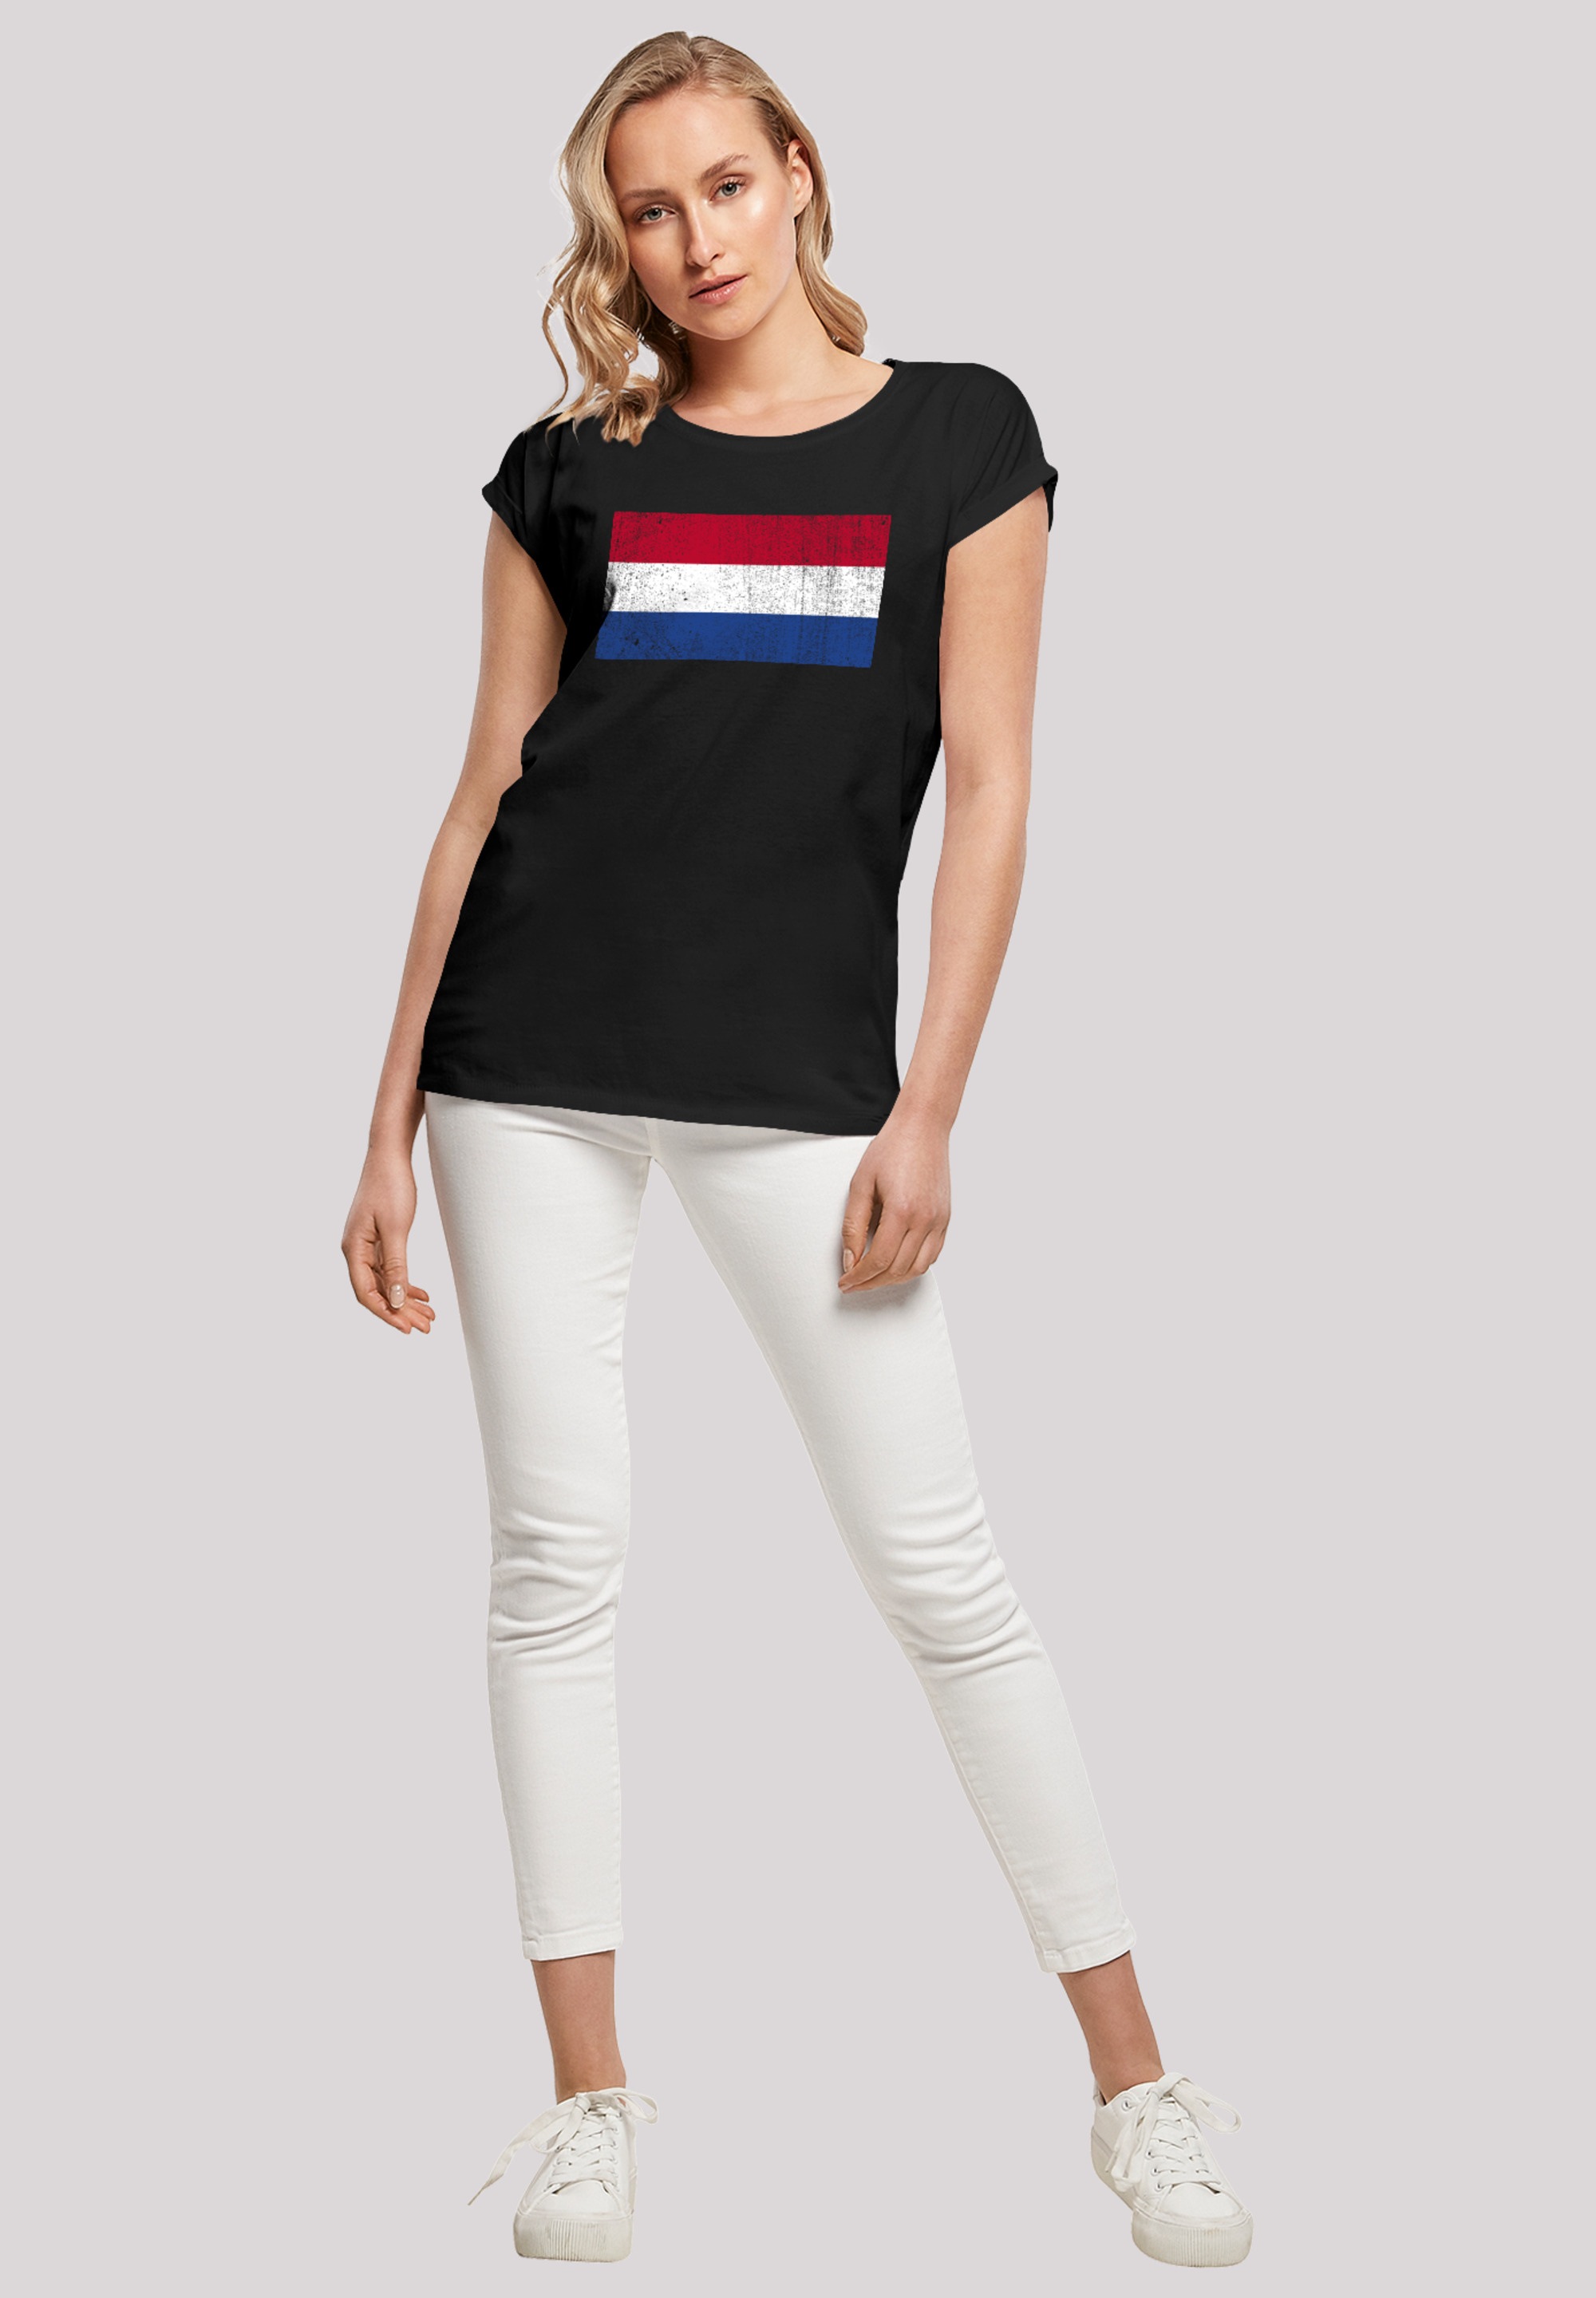 Holland distressed«, F4NT4STIC Keine | Flagge BAUR NIederlande für bestellen Angabe »Netherlands T-Shirt